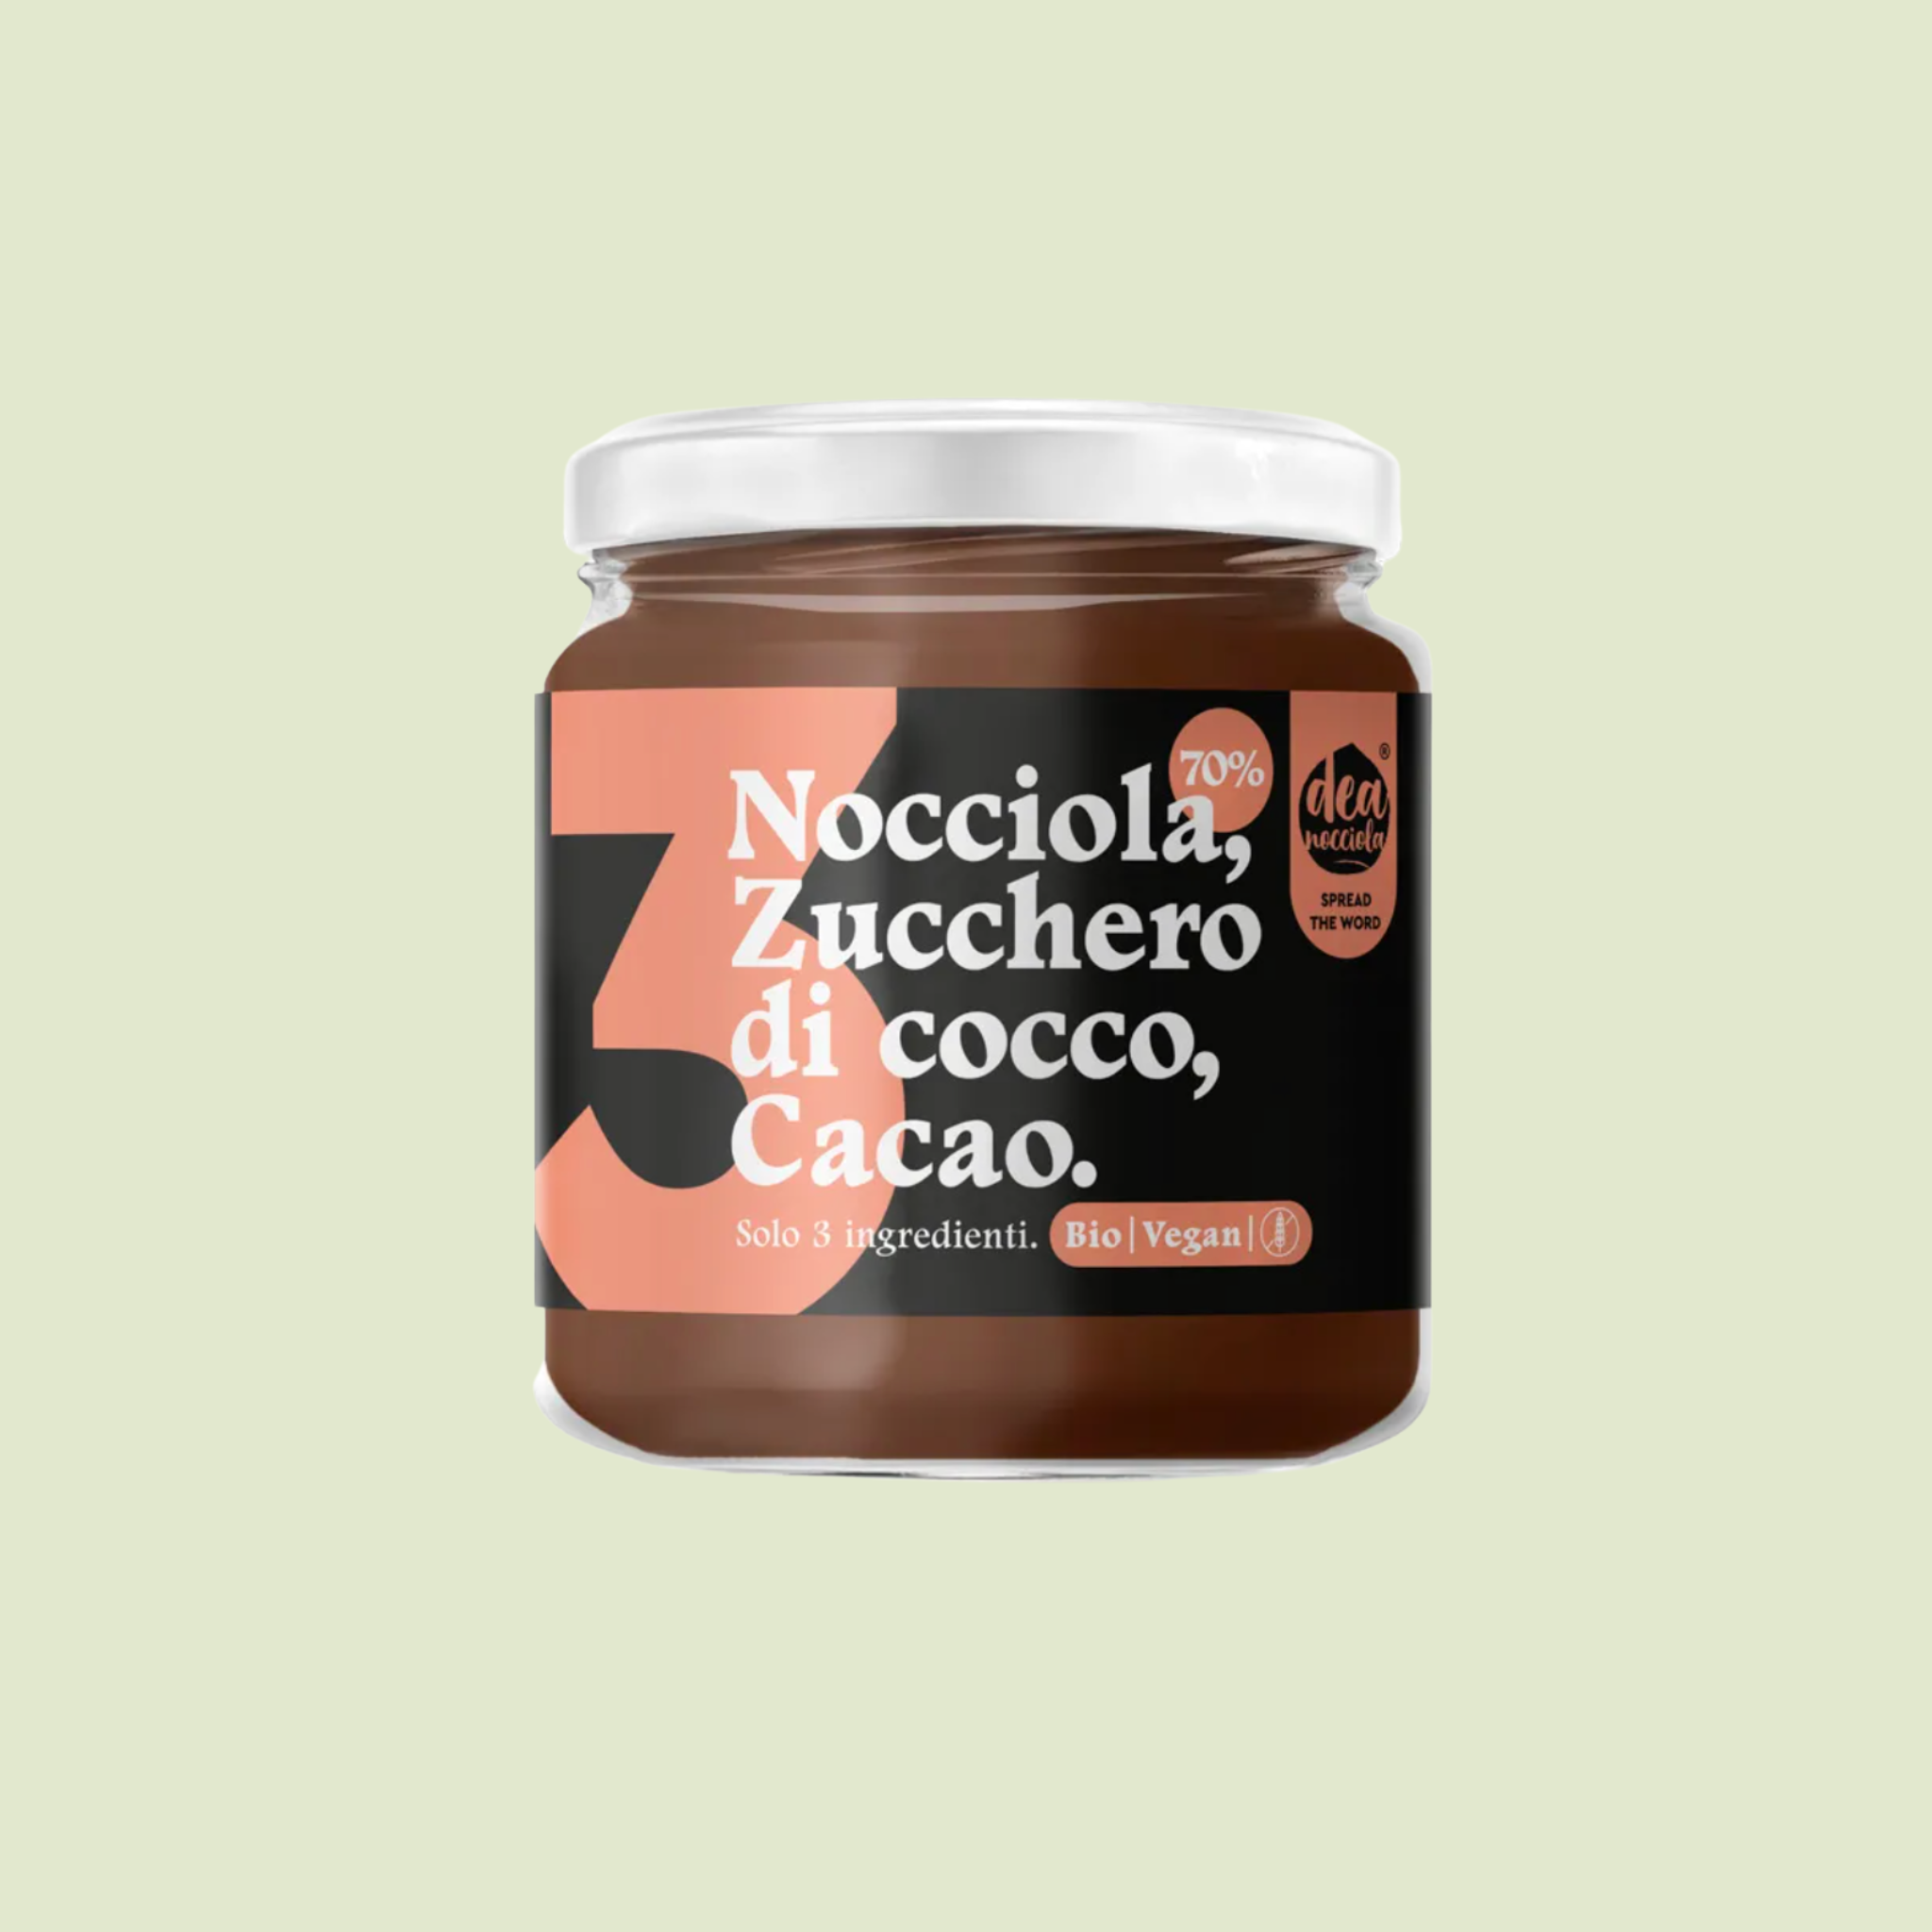 Nocciola, Zucchero di Cocco, Cacao - Crema Spalmabile 3 Ingredienti